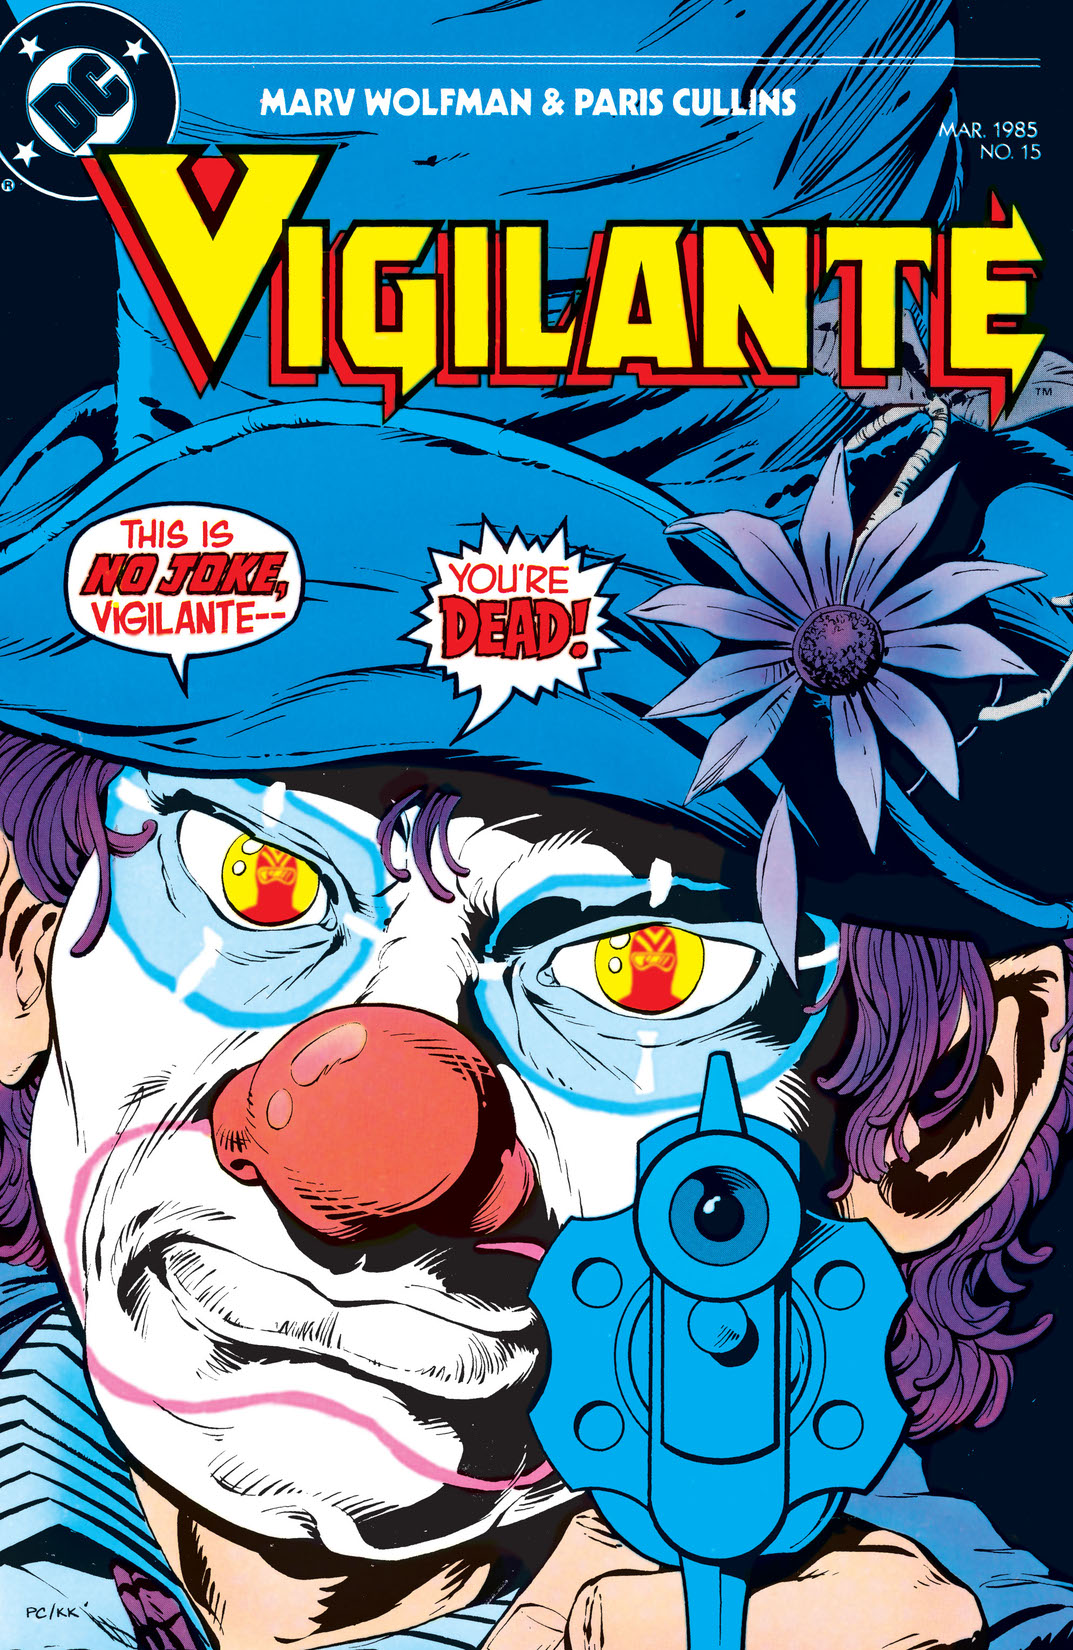 The Vigilante #15 preview images